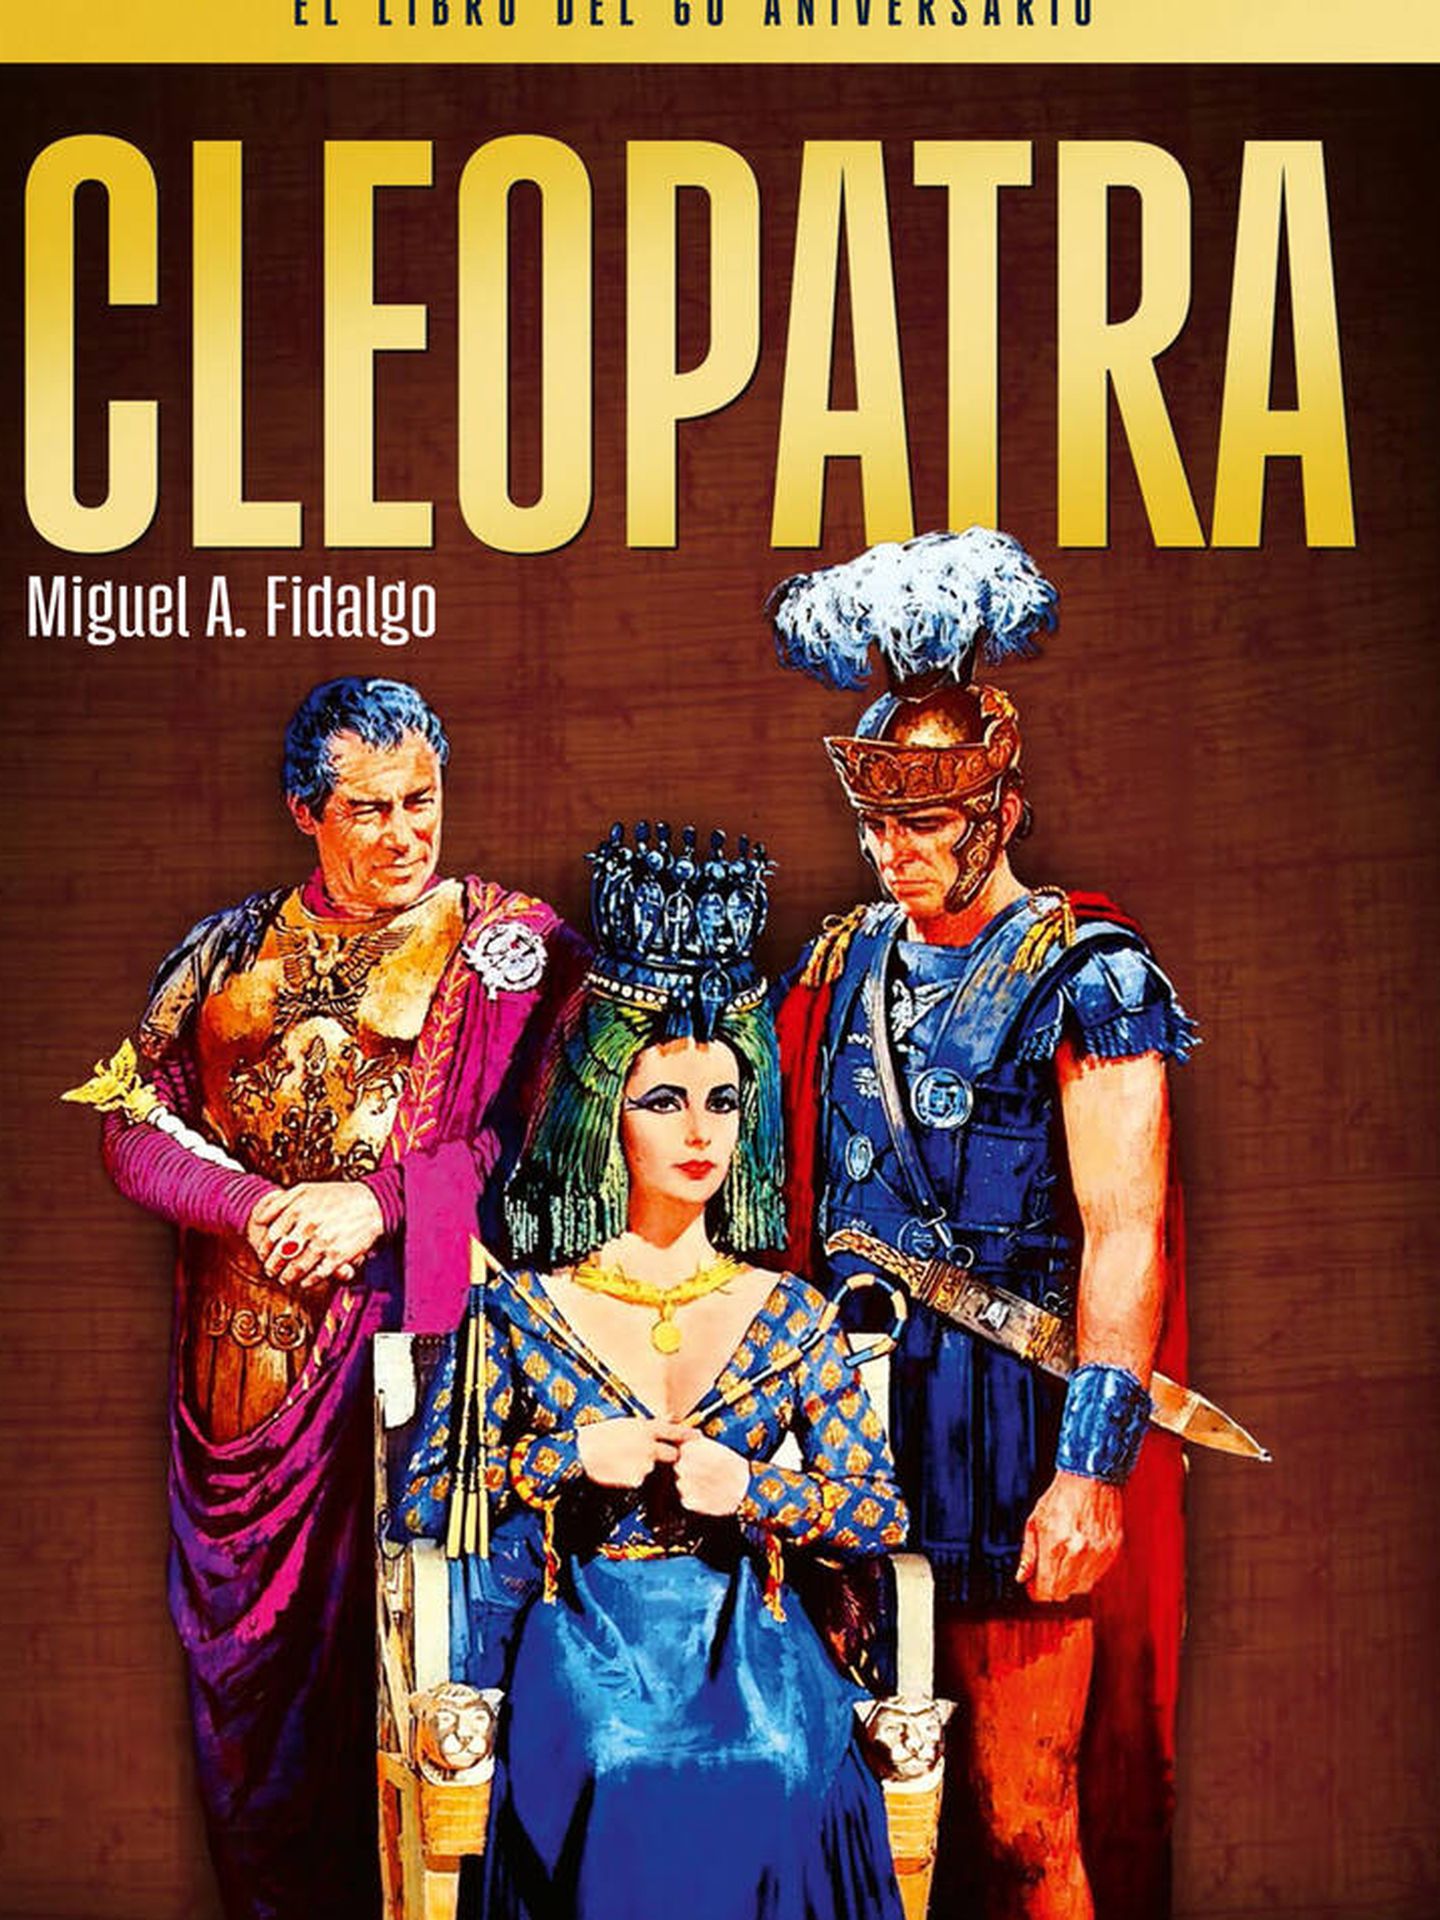 'Cleopatra. El libro del 60 aniversario', de Miguel Ángel Fidalgo. (Notorious Ediciones)